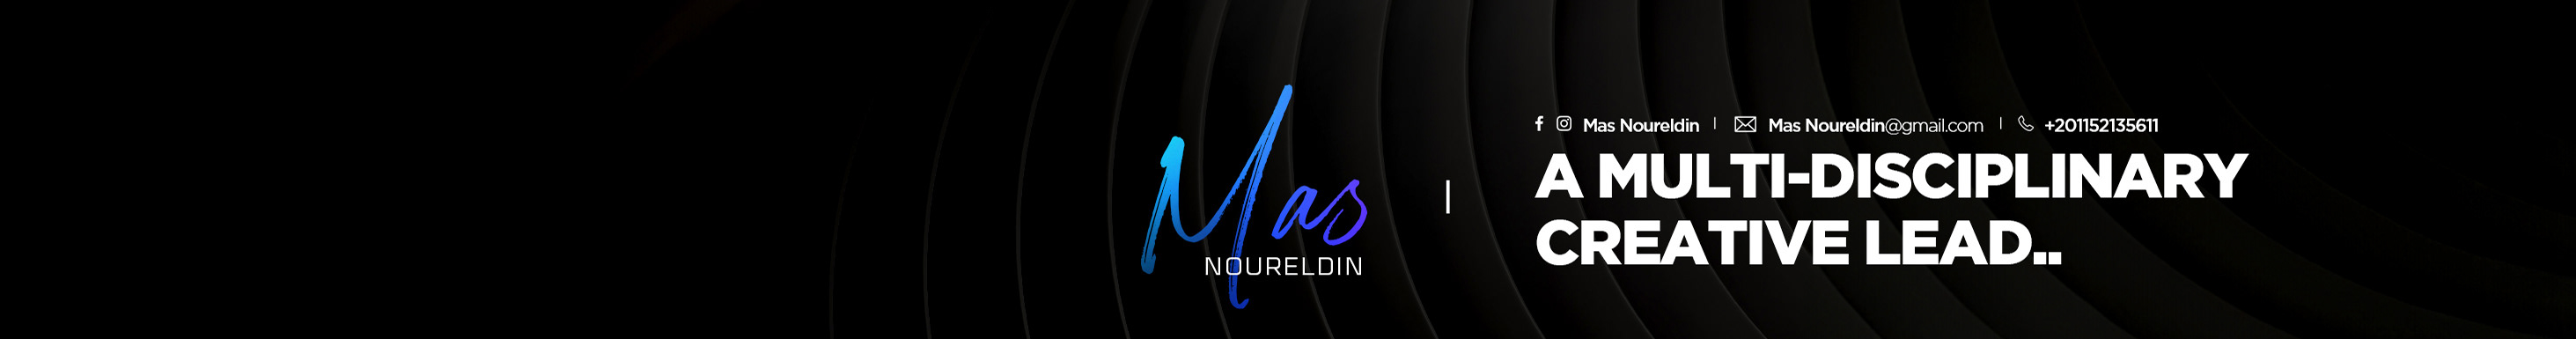 Mas Noureldin のプロファイルバナー